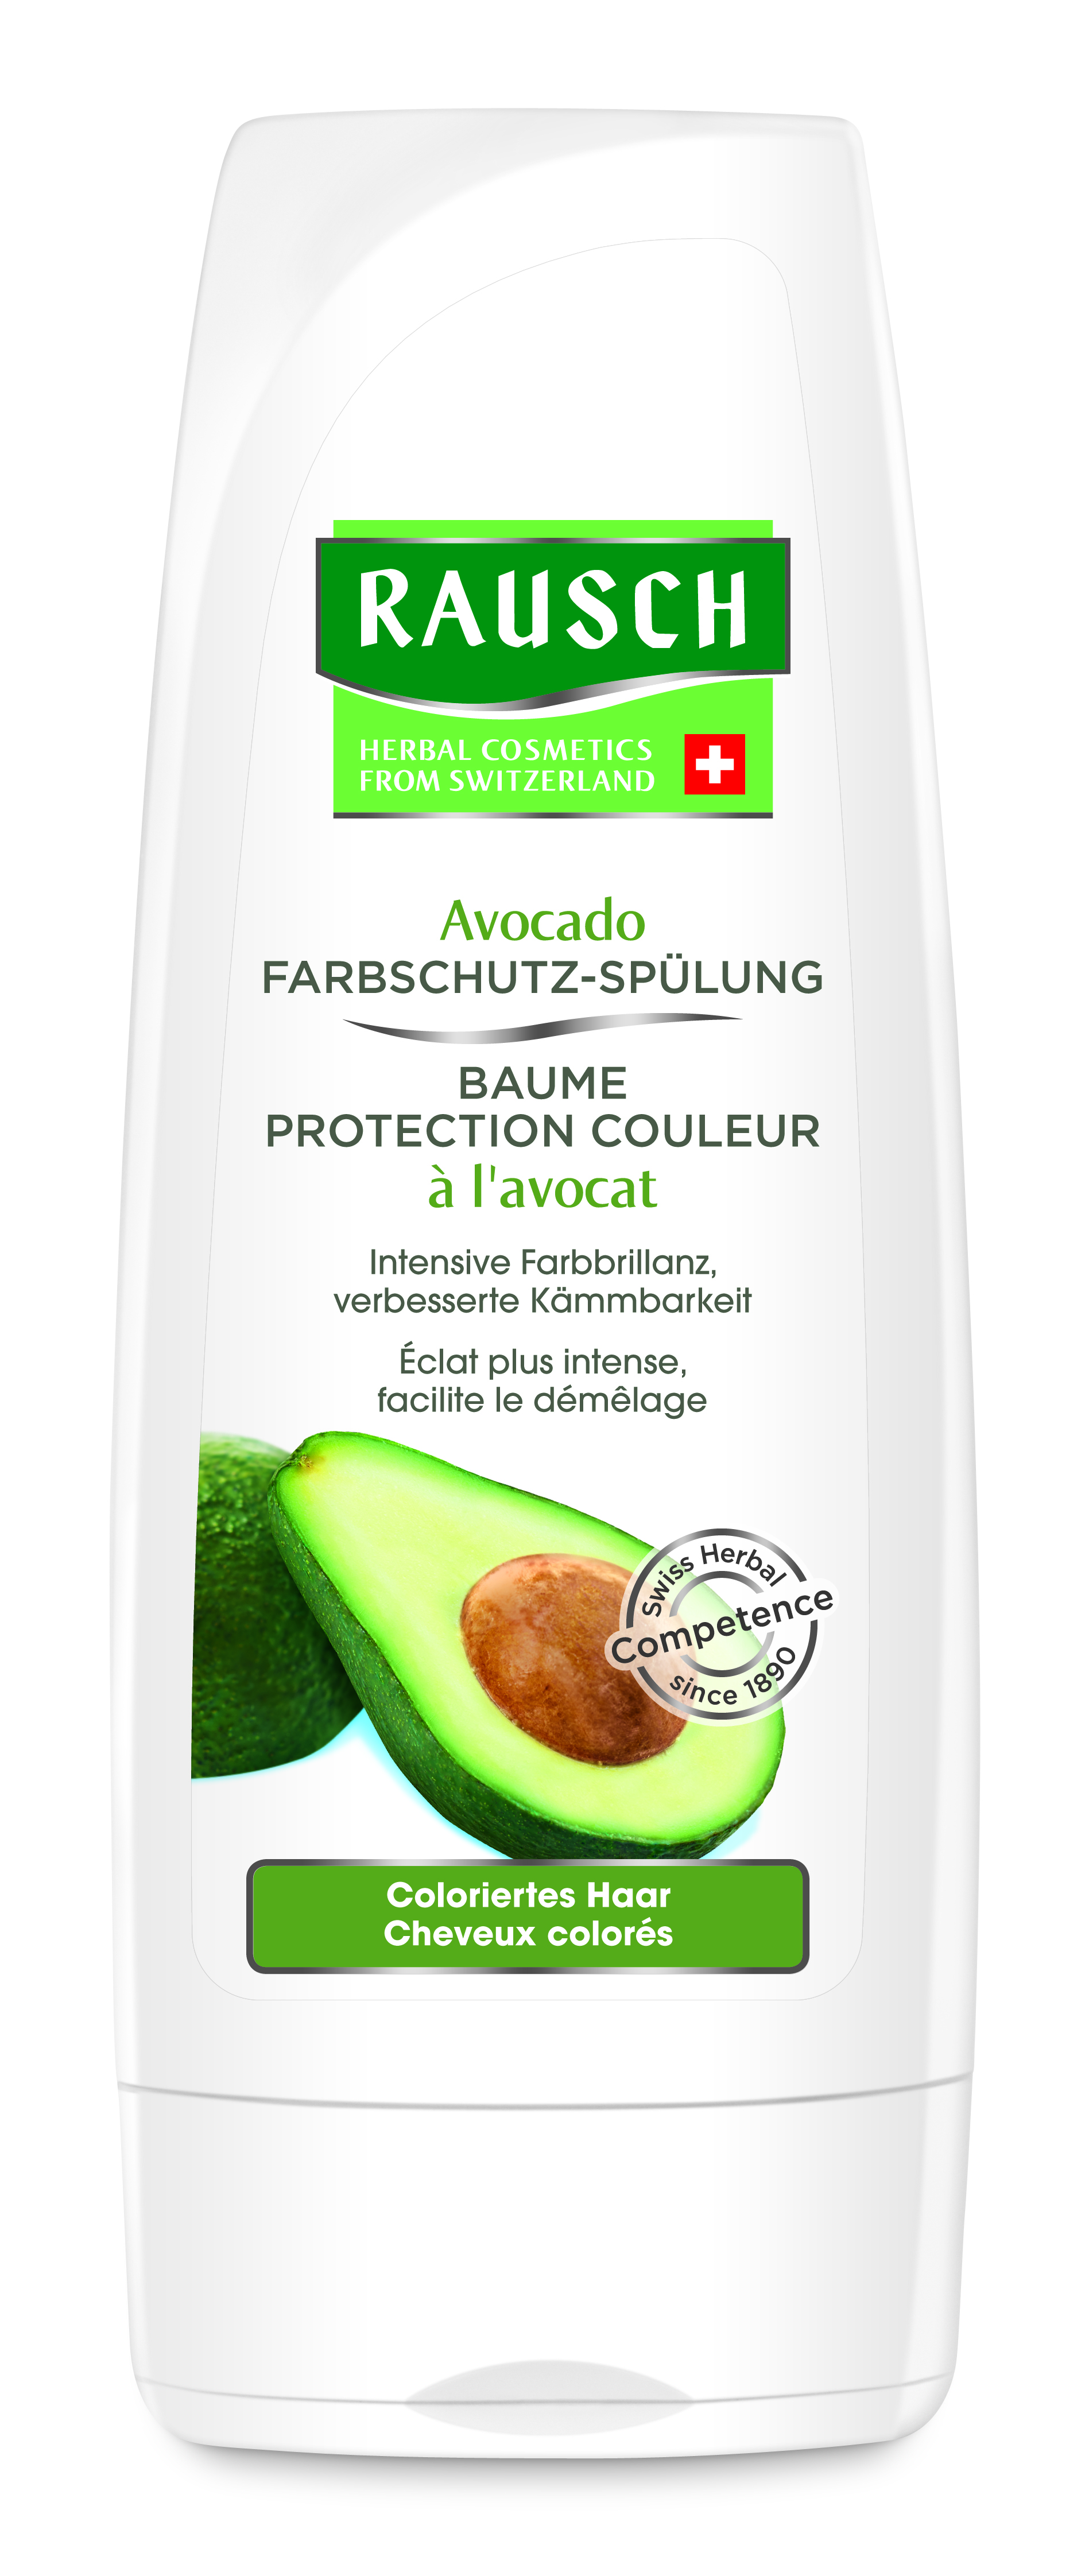 Rausch Avocado Farbschutz-Spülung